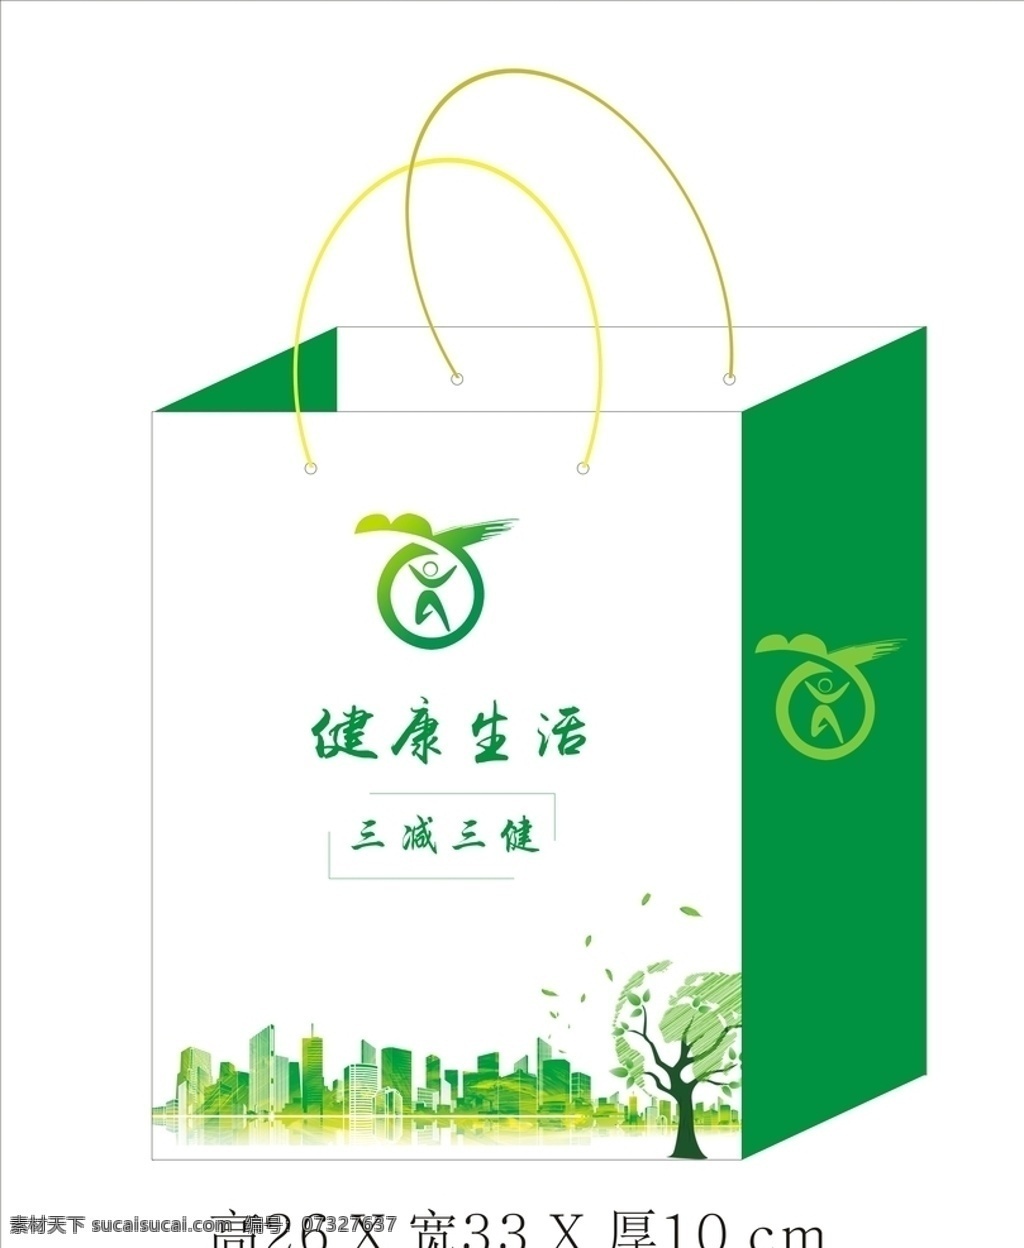 手提袋 三减三健 健康生活 环保袋 环保 袋子 袋 环保标志 健康生活标志 绿色 城市